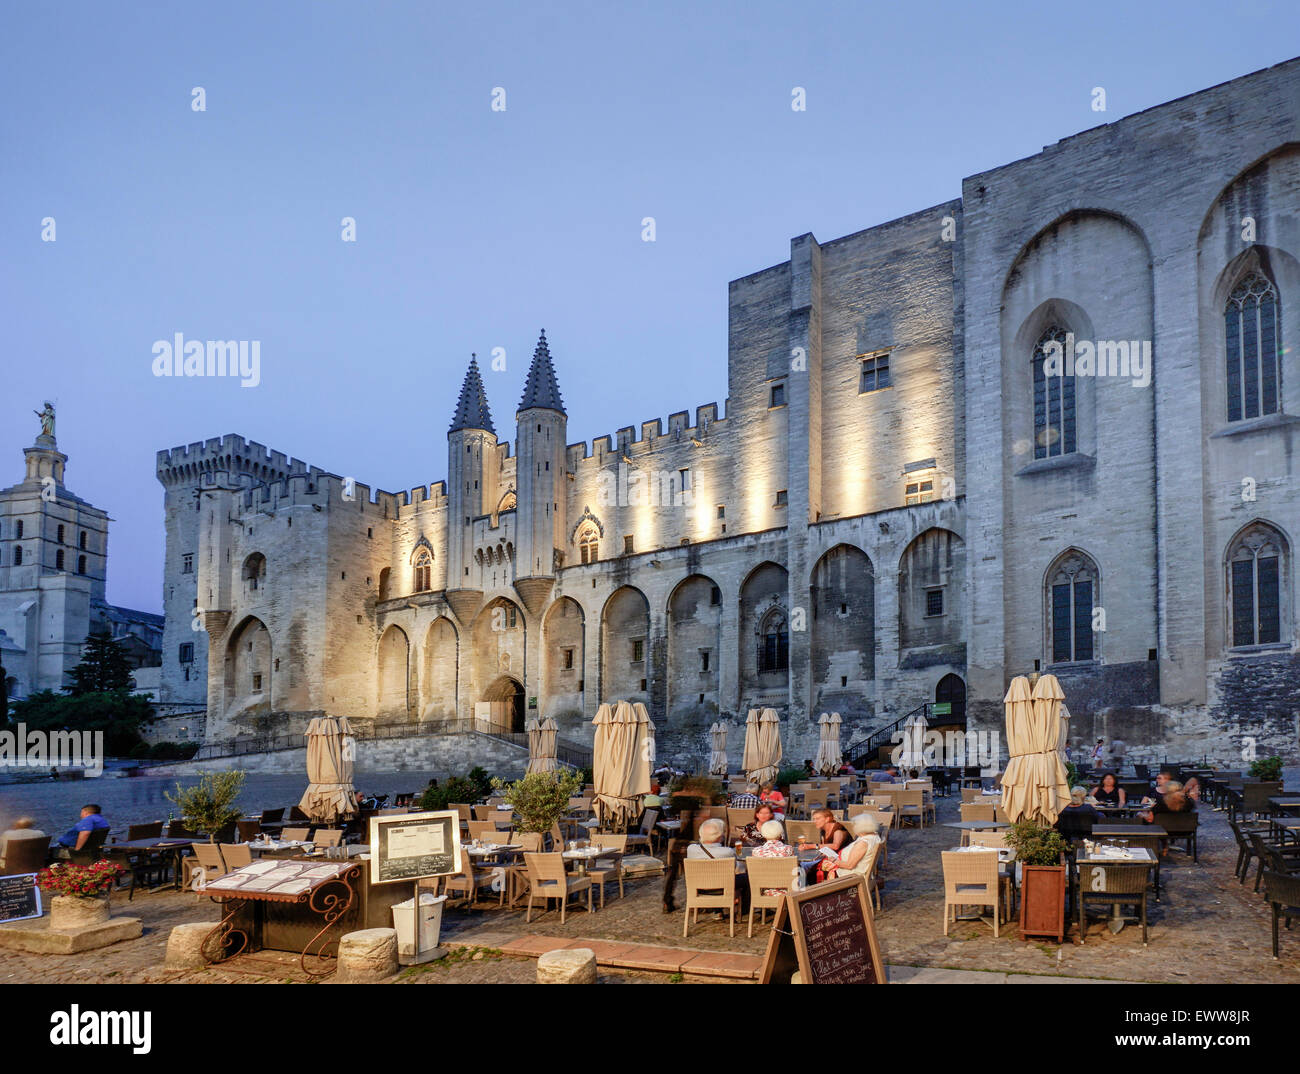 Palais de Papes,  Avignon, Bouche du Rhone, France Stock Photo